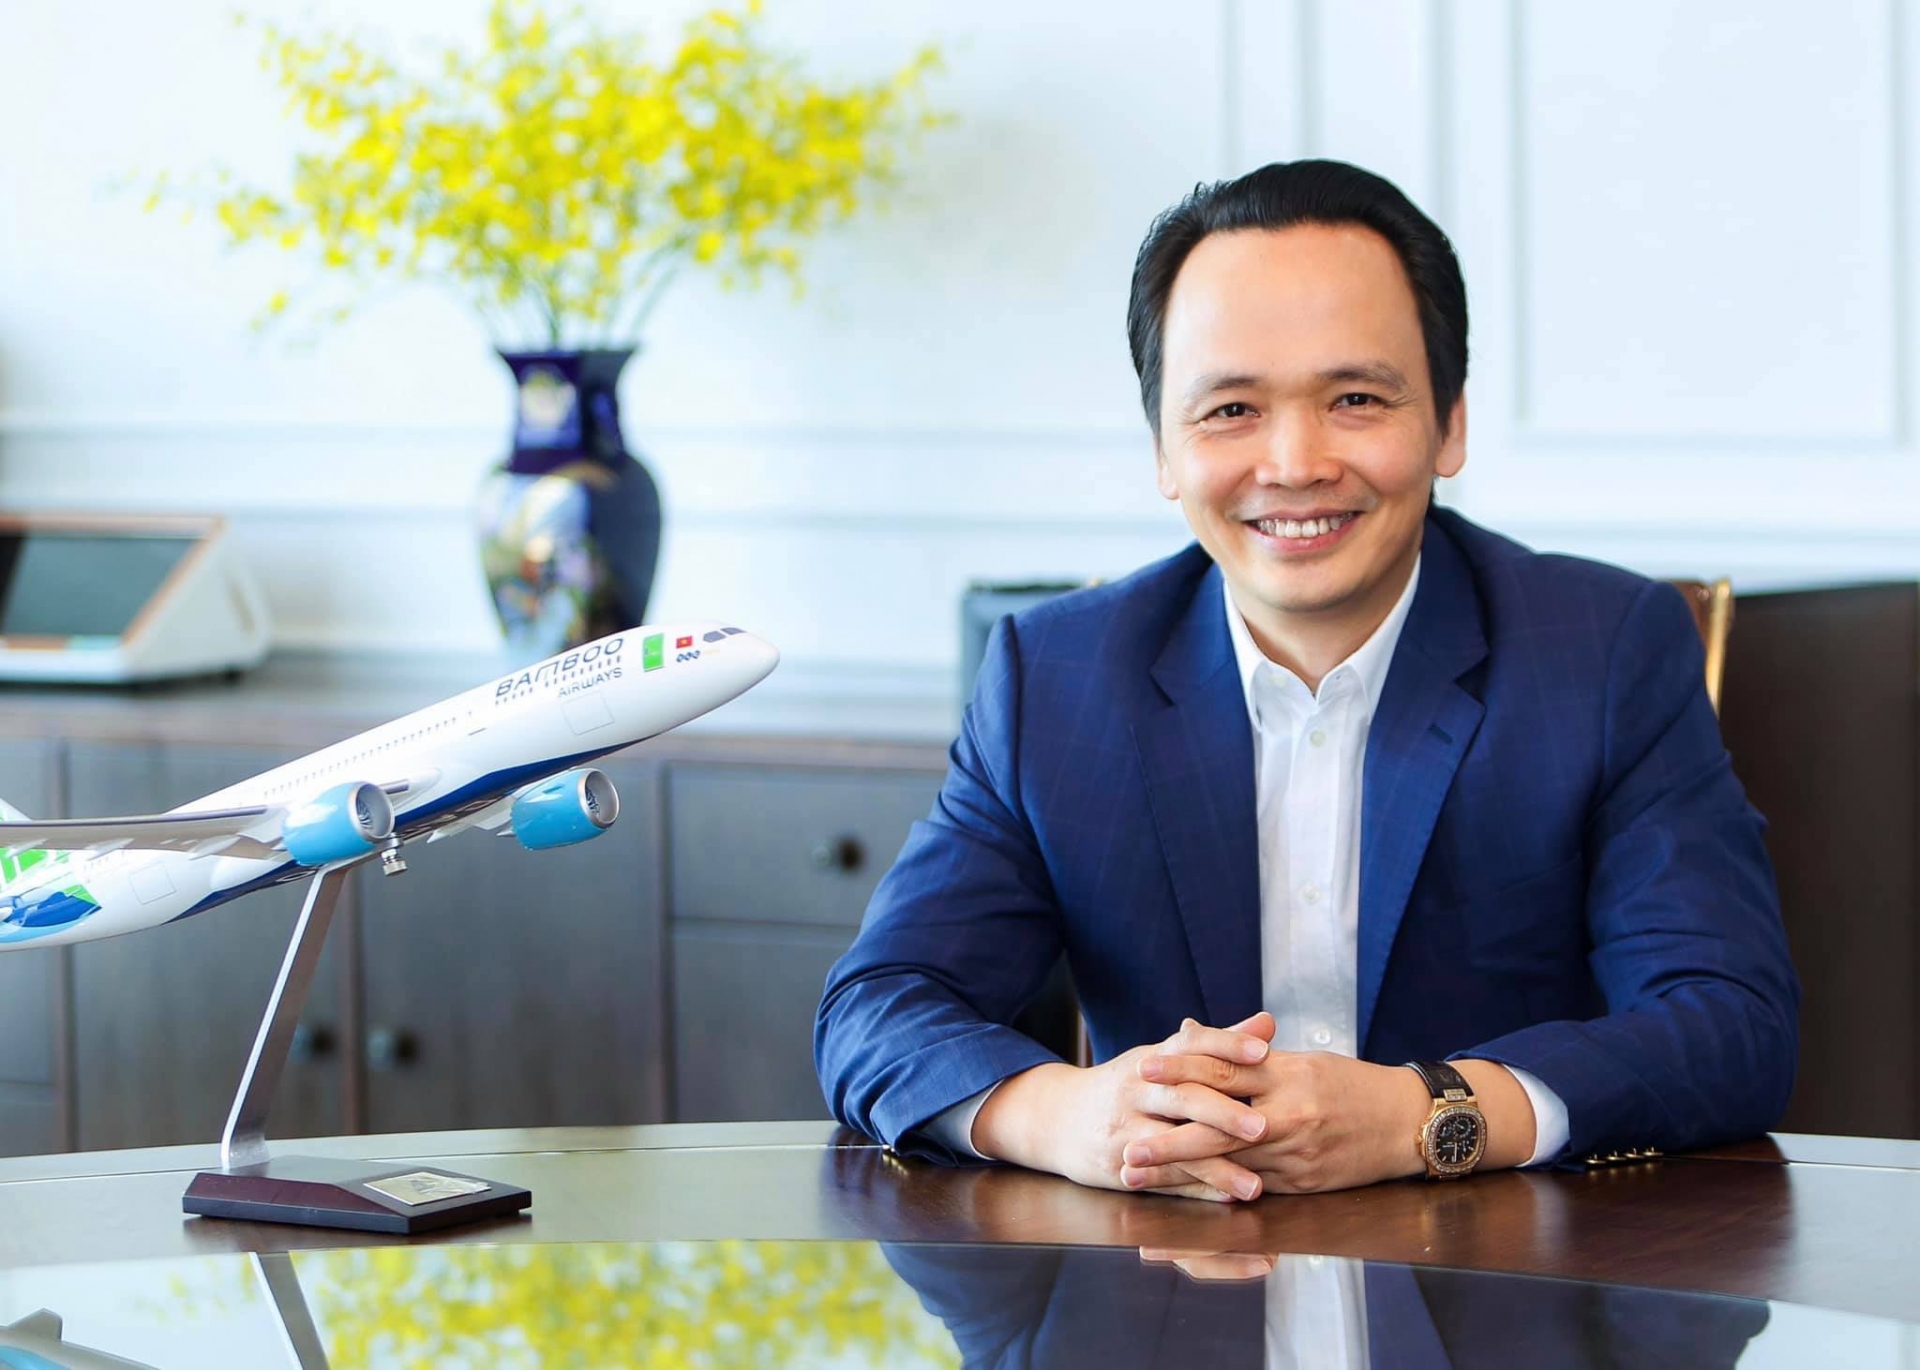 Trịnh Văn Quyết được biết đến là doanh nhân nổi danh trên thương trường bất động sản, chứng khoán, hàng không khi là Chủ tịch HĐQT Tập đoàn FLC